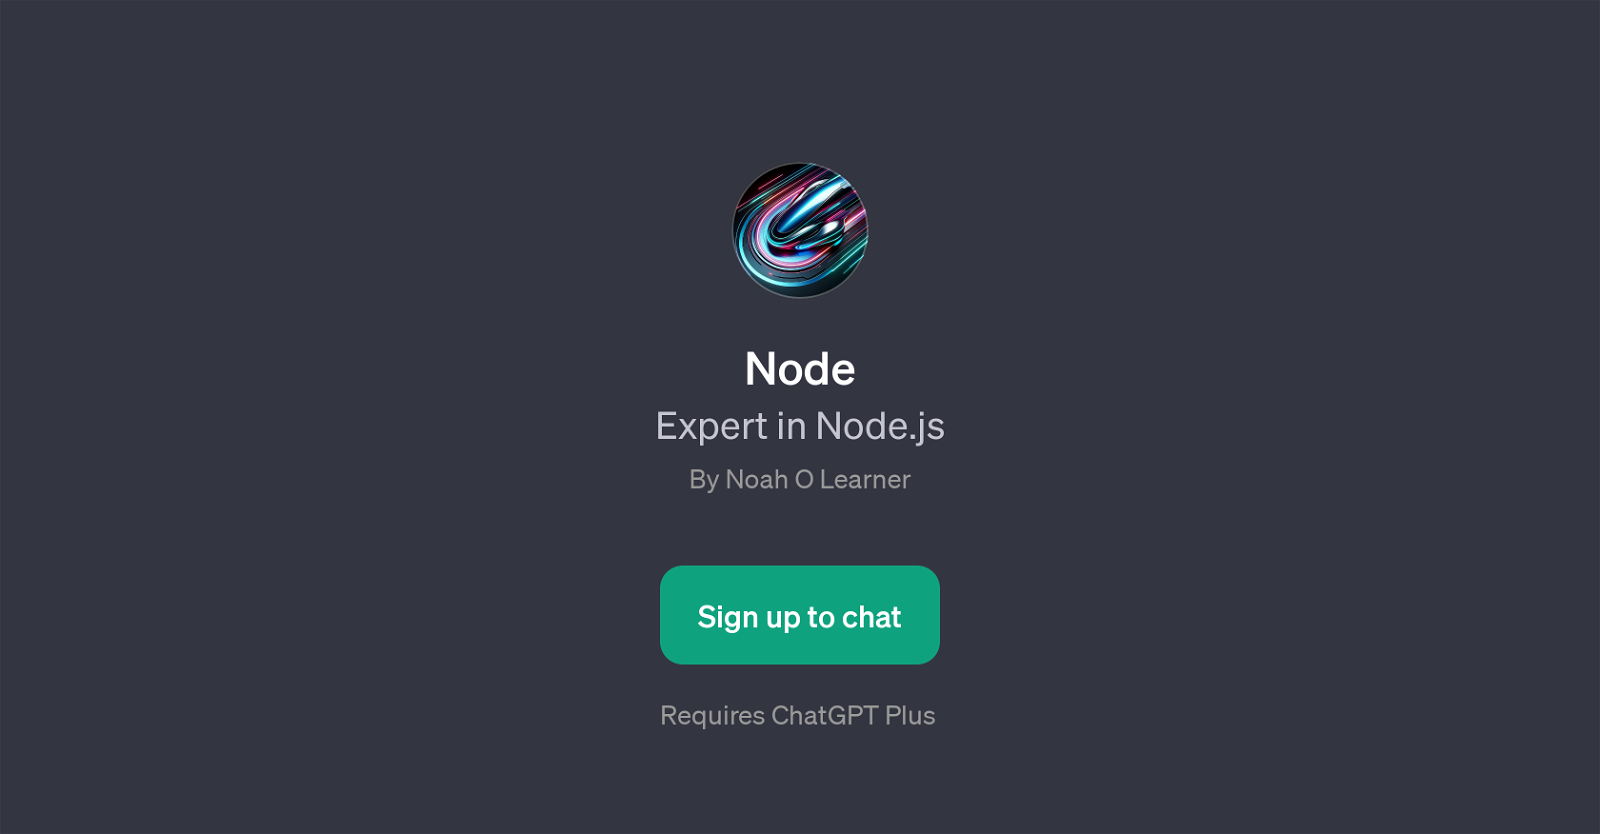 NodeExpert website